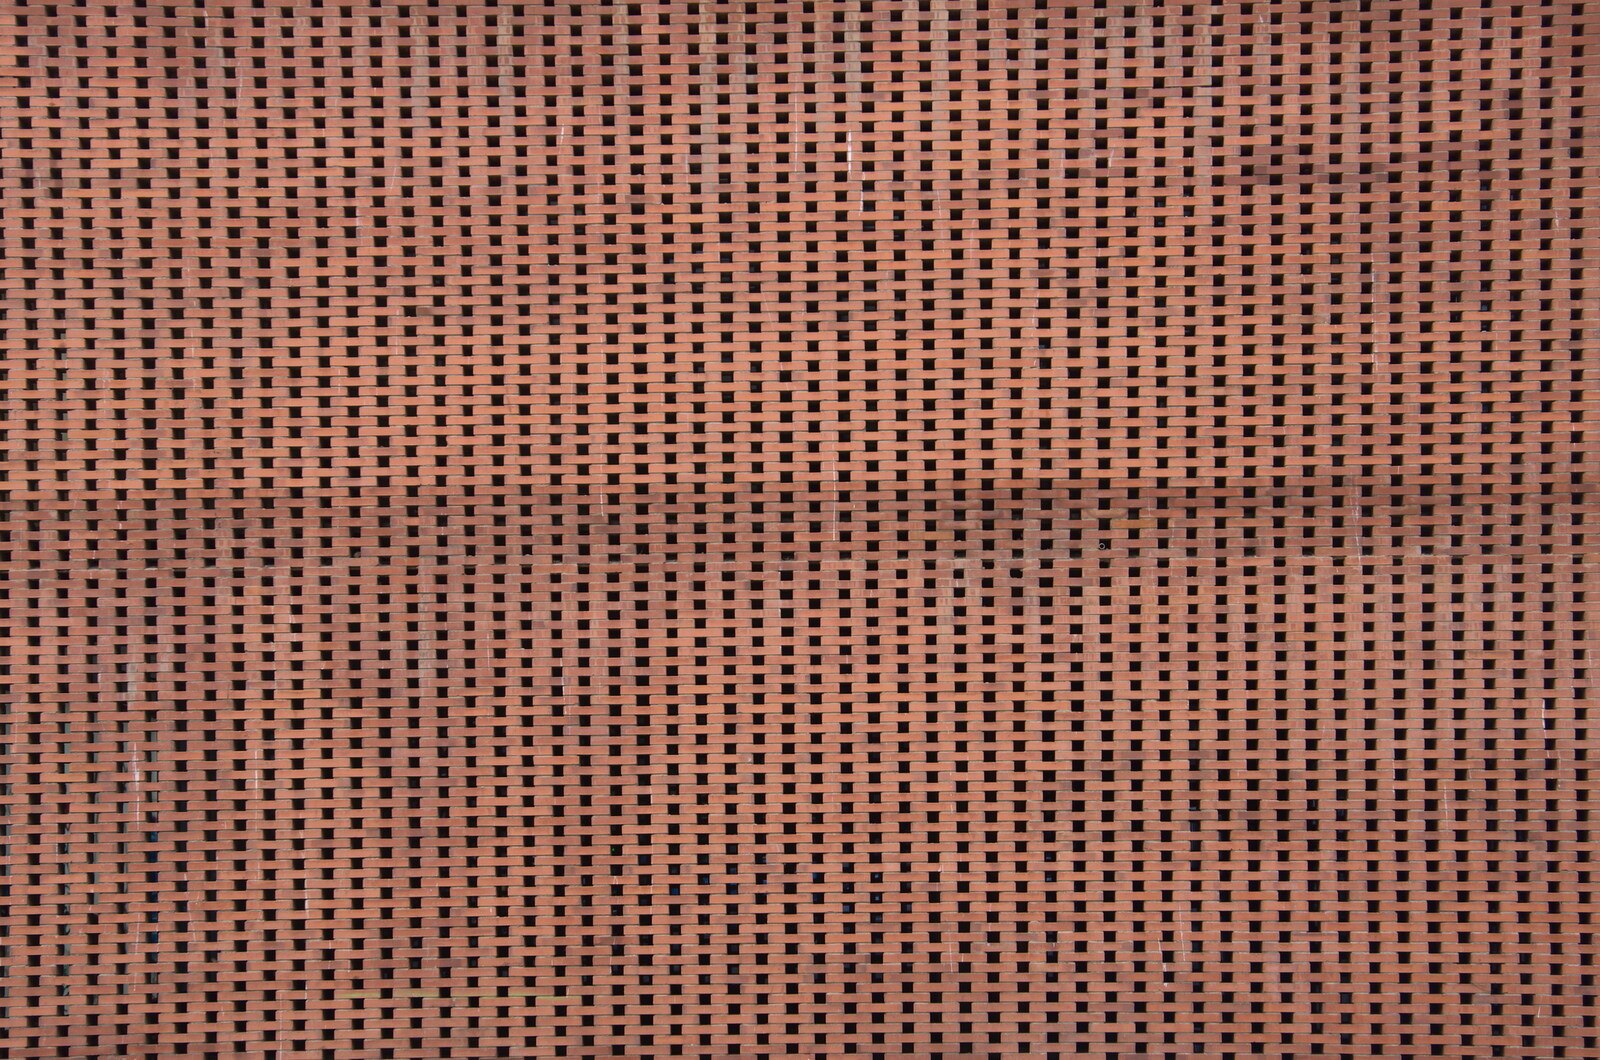 A massive spaced brick wall from L'Aquarium de Barcelona, Port Vell, Catalonia, Spain - 23rd October 2017